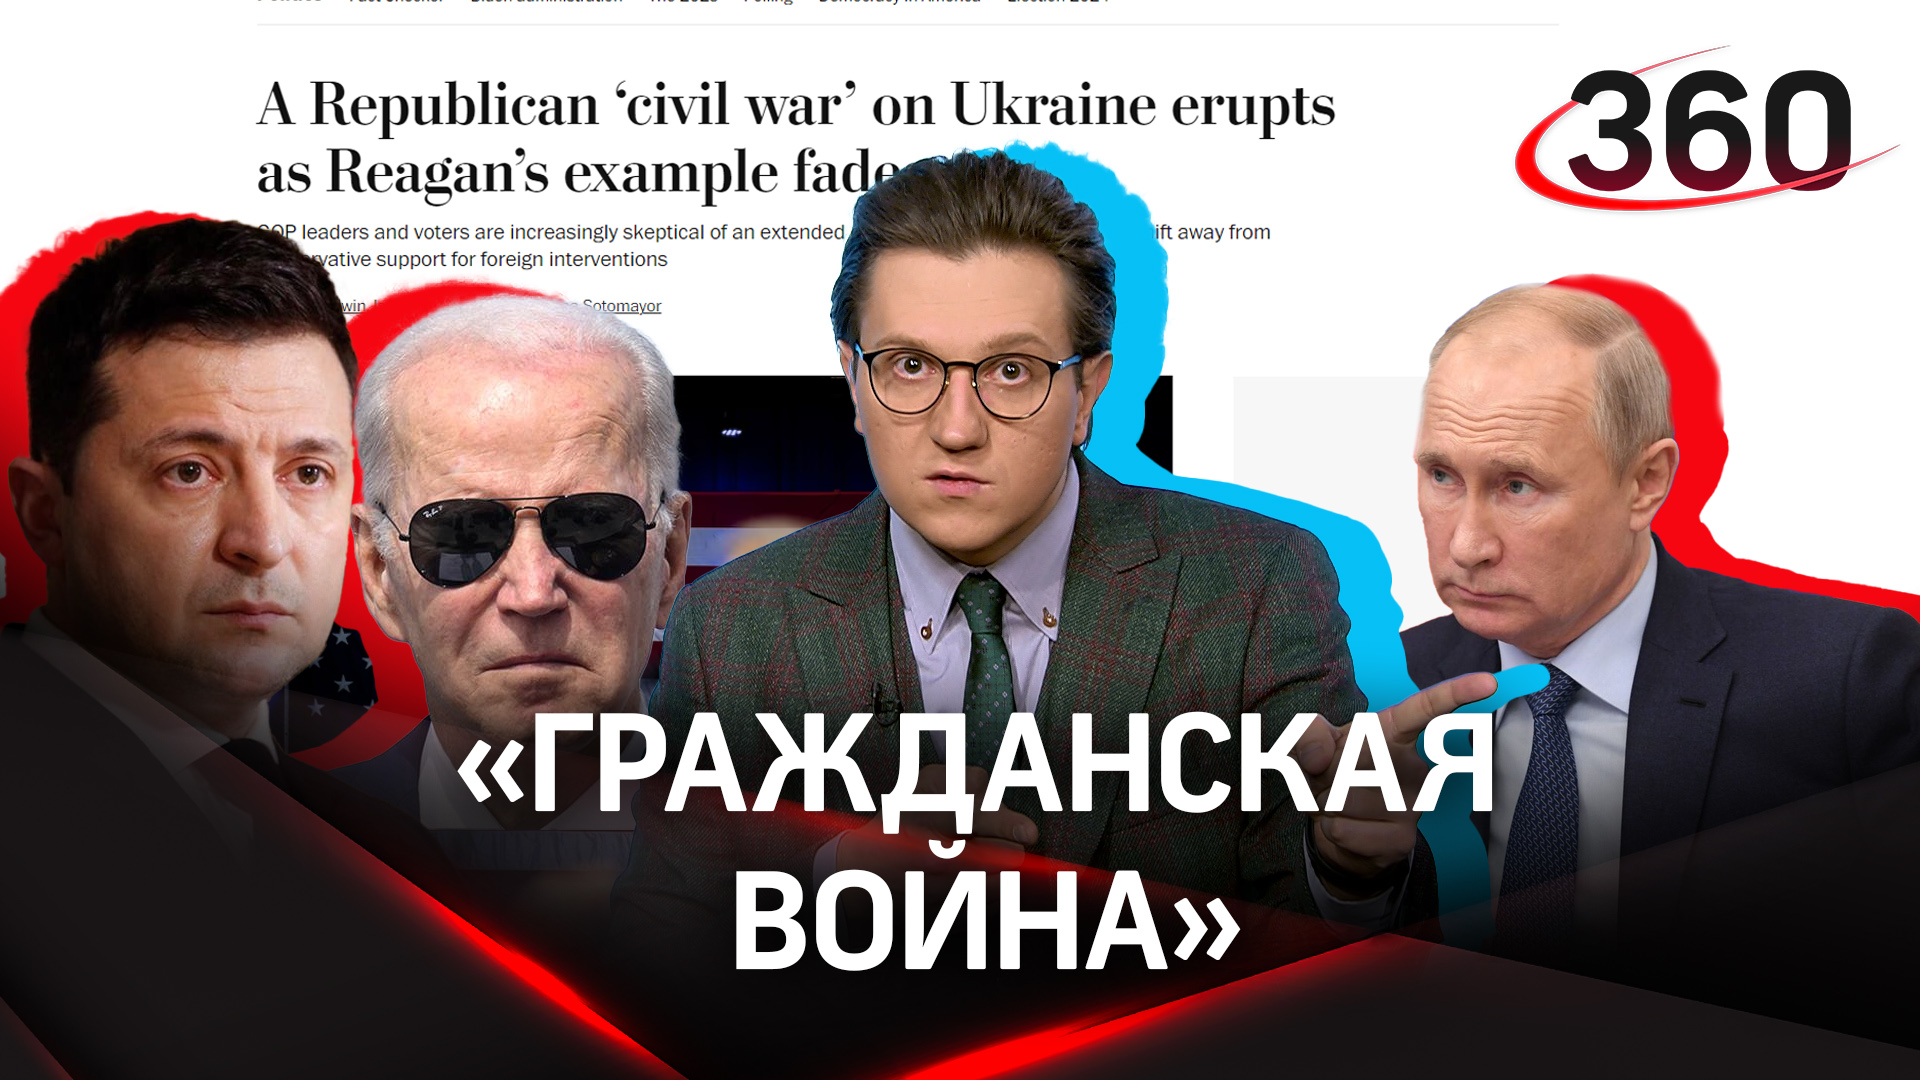 Байден боится победы Украины, но хочет поражения России - «гражданская война» в США